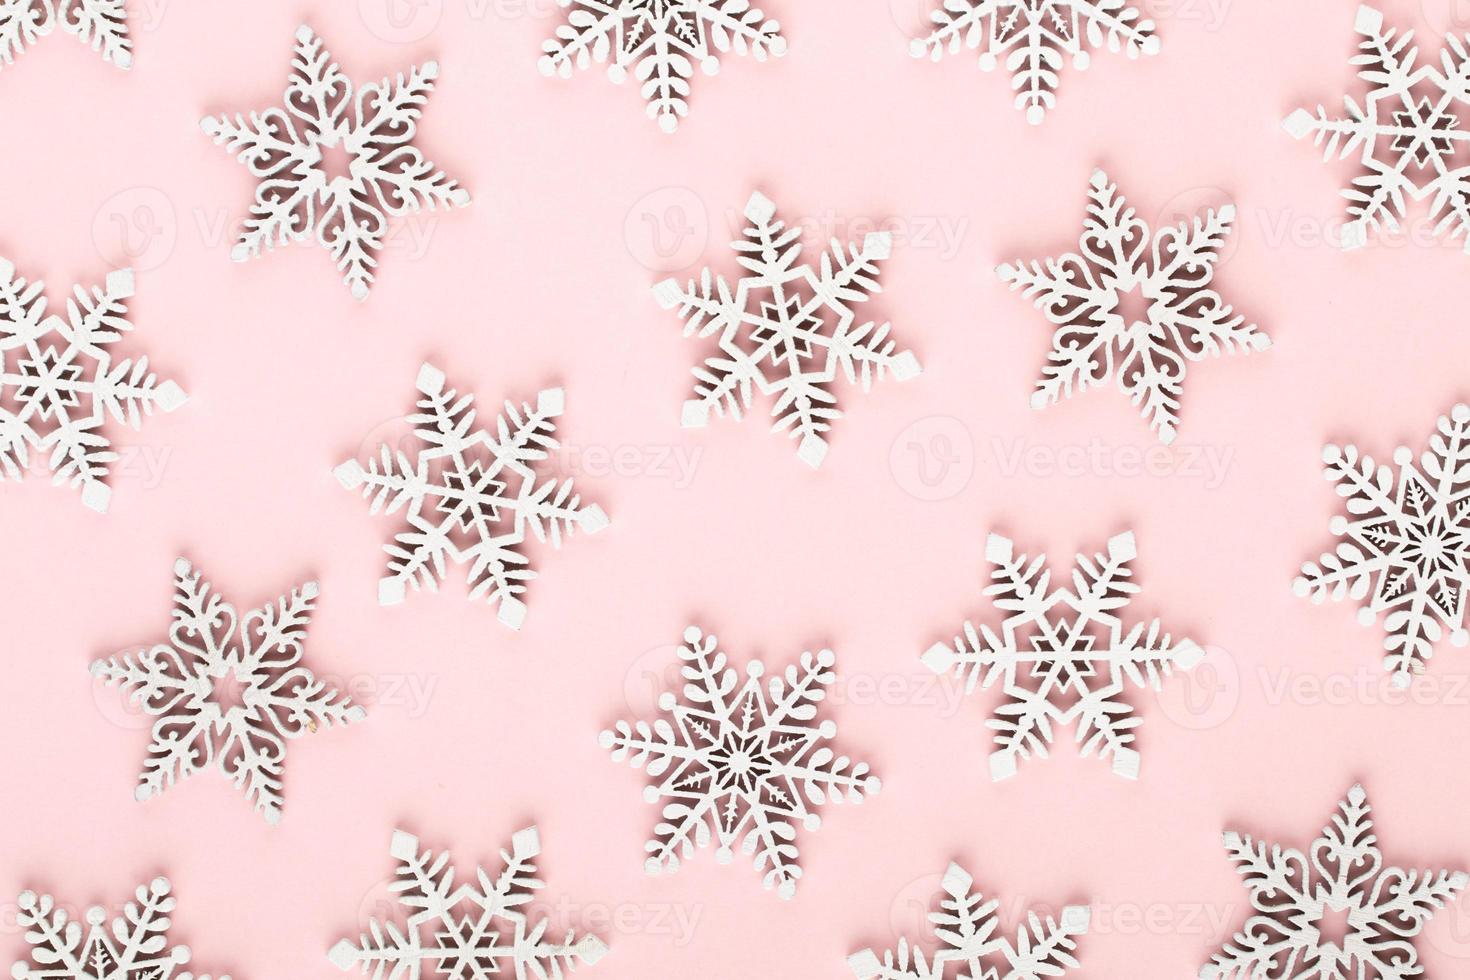 décorations de neige blanche sur fond rose photo